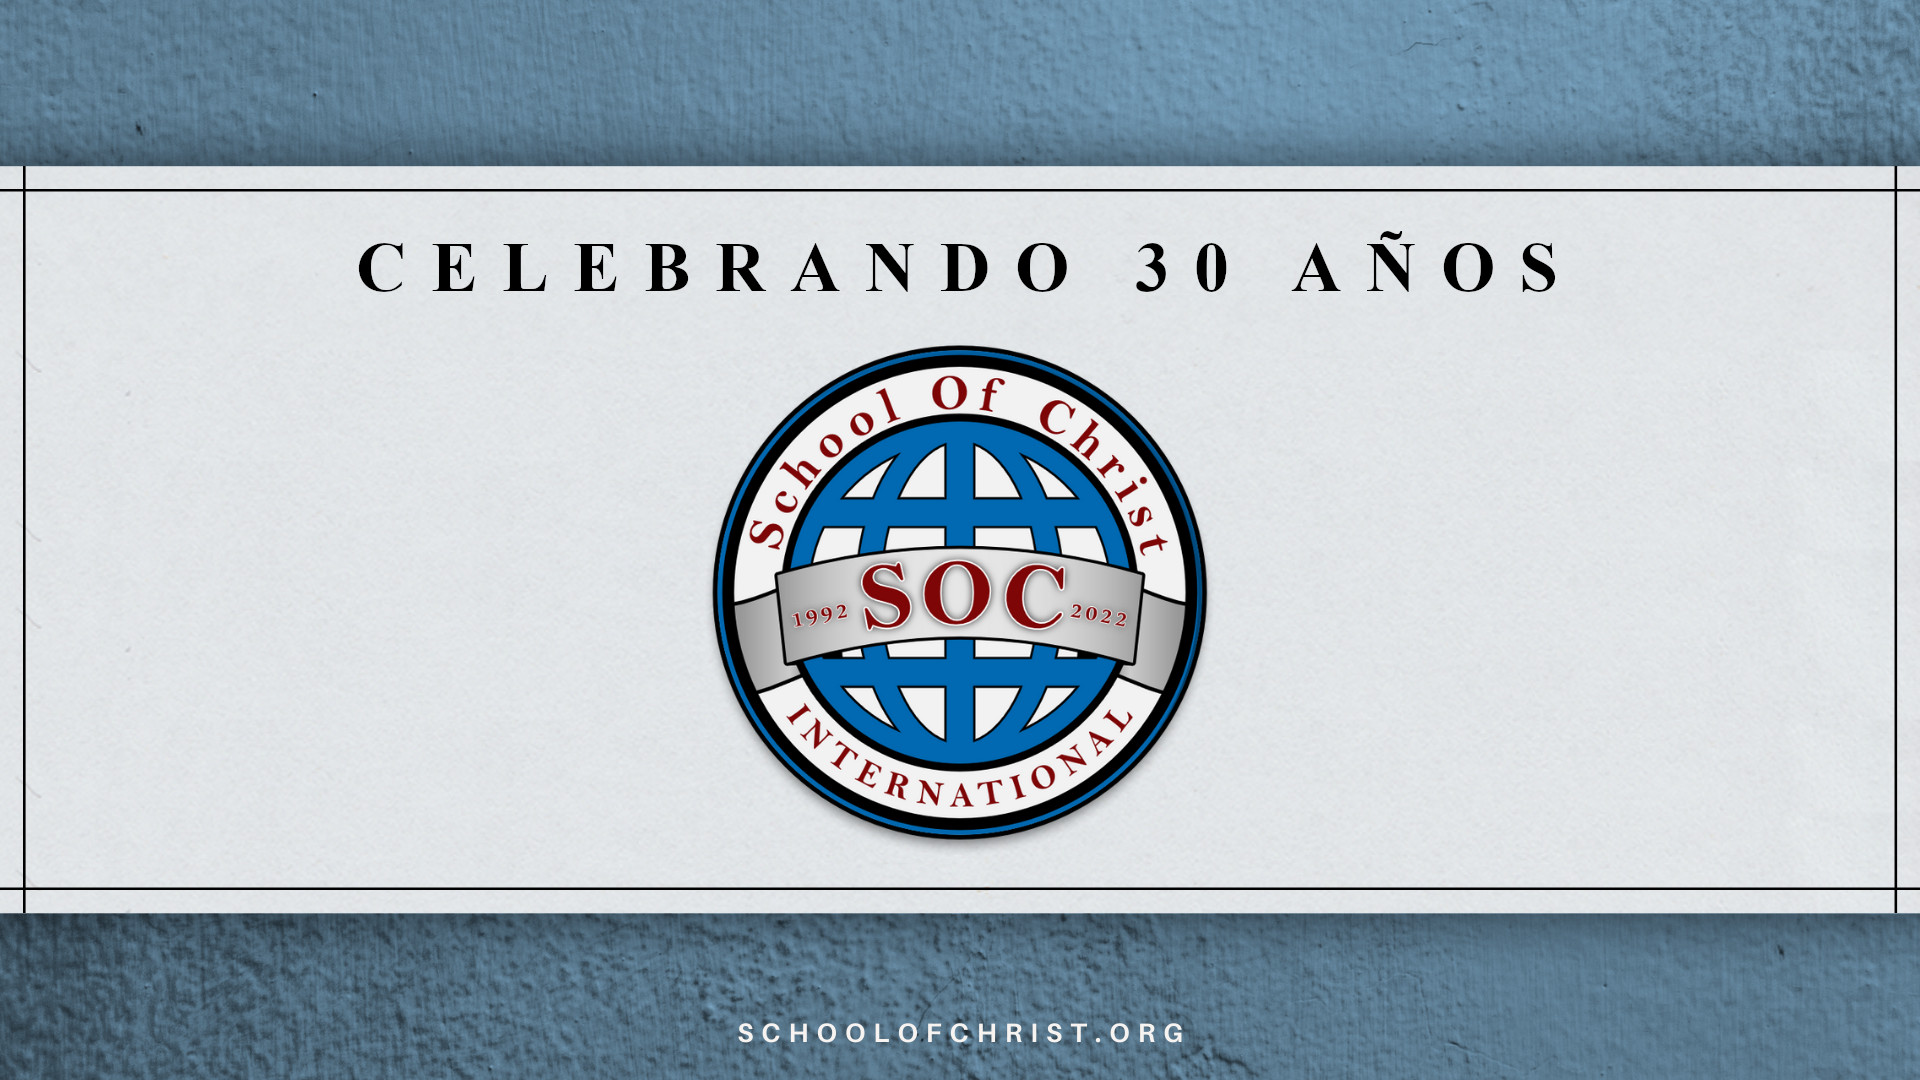 Báner Celebrando 30 años con SOC logo